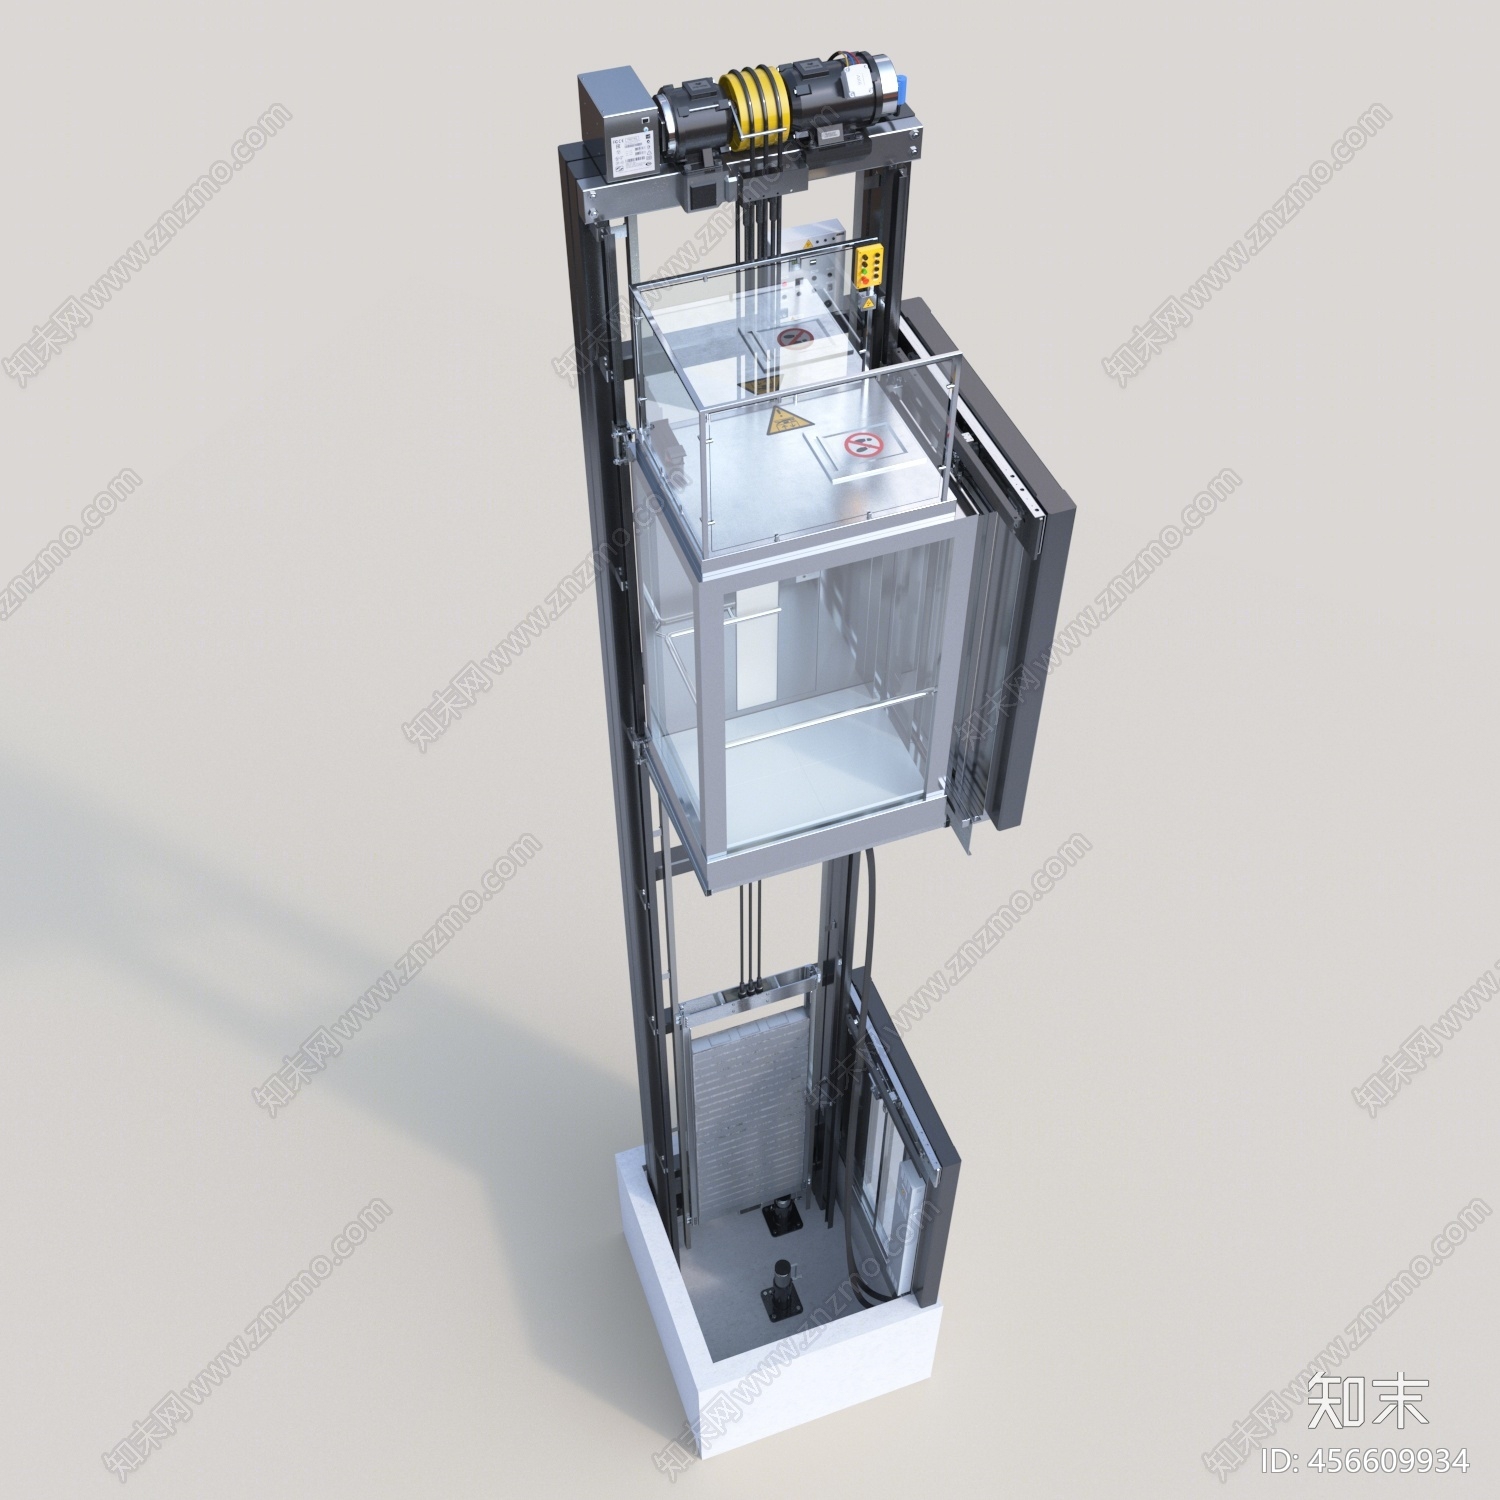 现代电梯3d模型下载